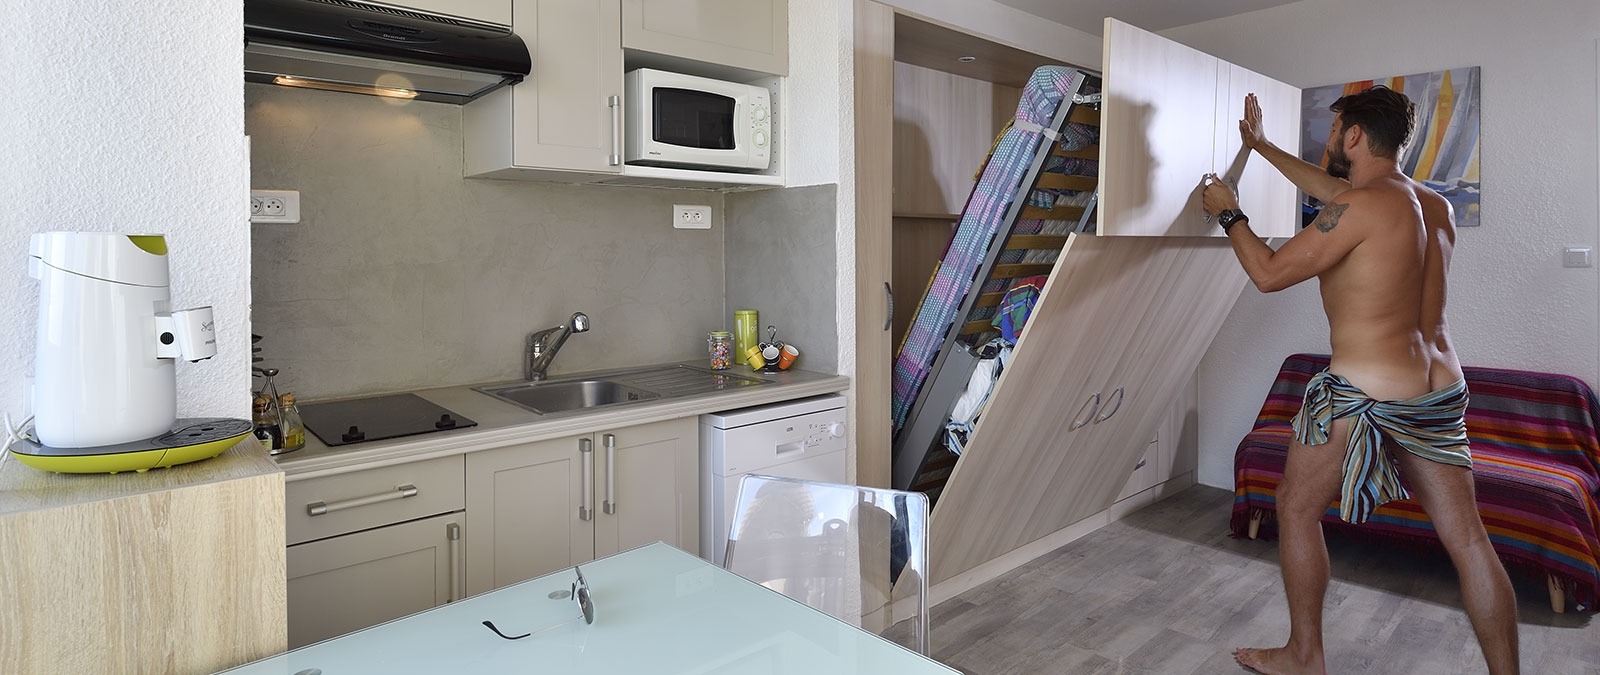 Voll ausgestattete Küche Studio Liouquet Swinger-Mietwohnung